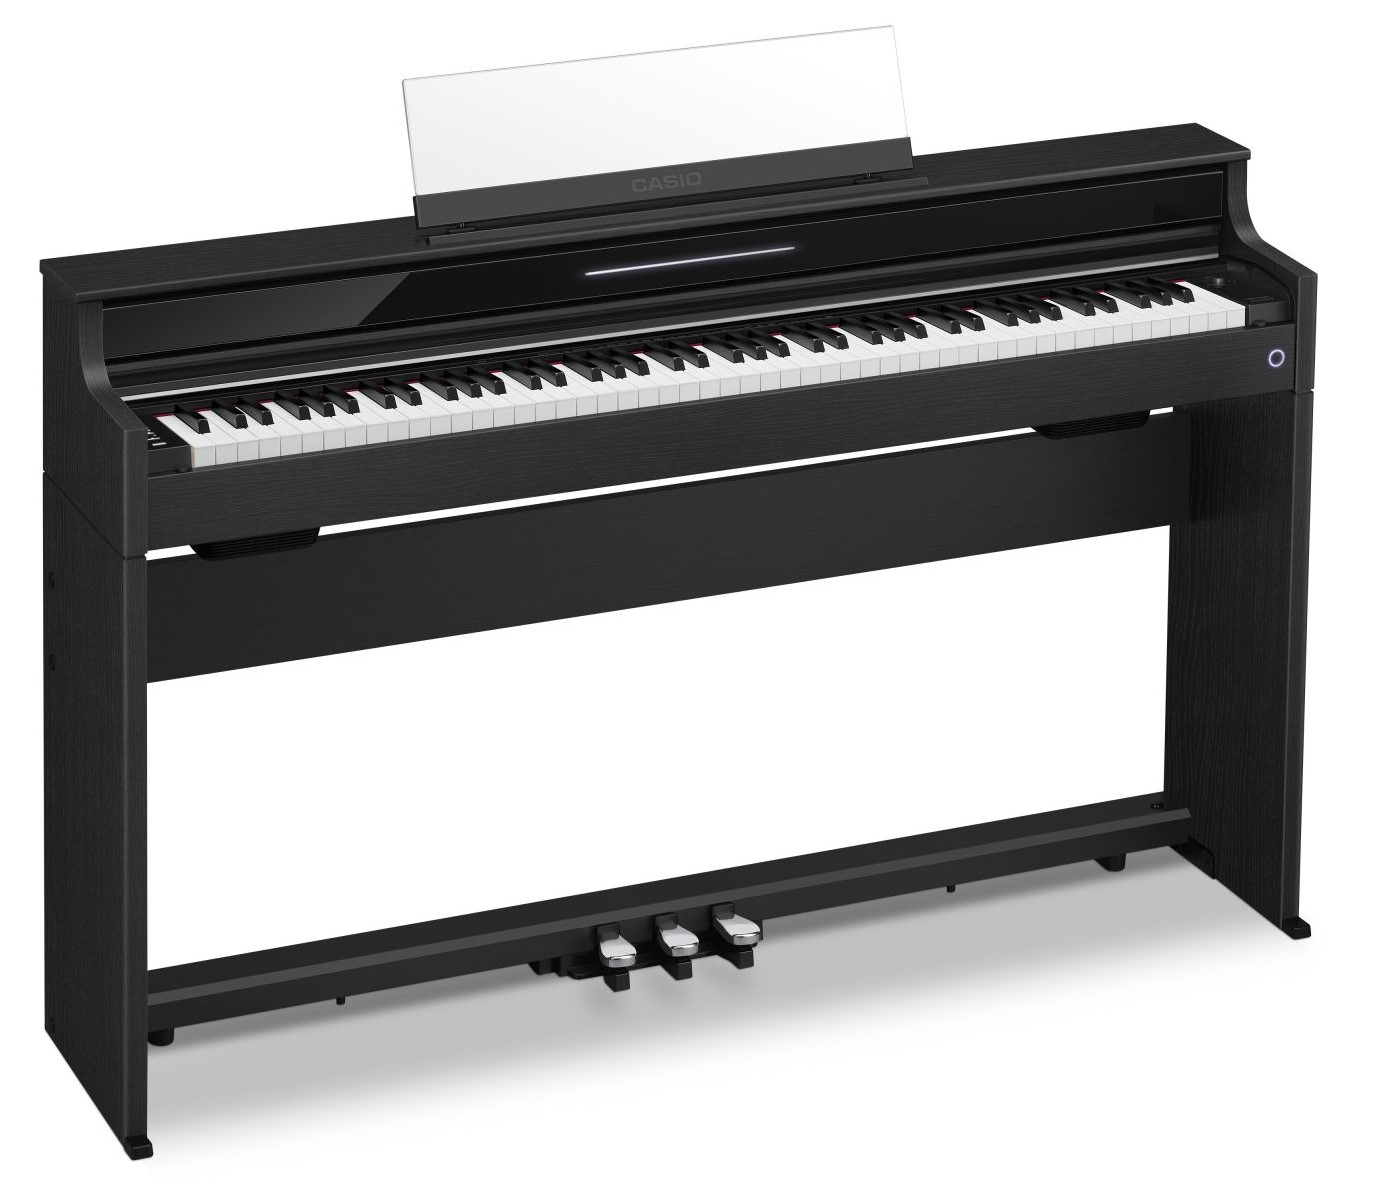 CASIO×島村楽器 コラボレーションモデル AP-S5000GP/S 新発売！ おすすめポイント グランドピアノの演奏性と表現力を追求した鍵盤 ピアノの演奏状況をリアルタイムで可視化できる「ビジュアルインフォメーションバー」 簡単な操作でピアノの設定などが行える専用アプリ「CASIO MUSIC  […]